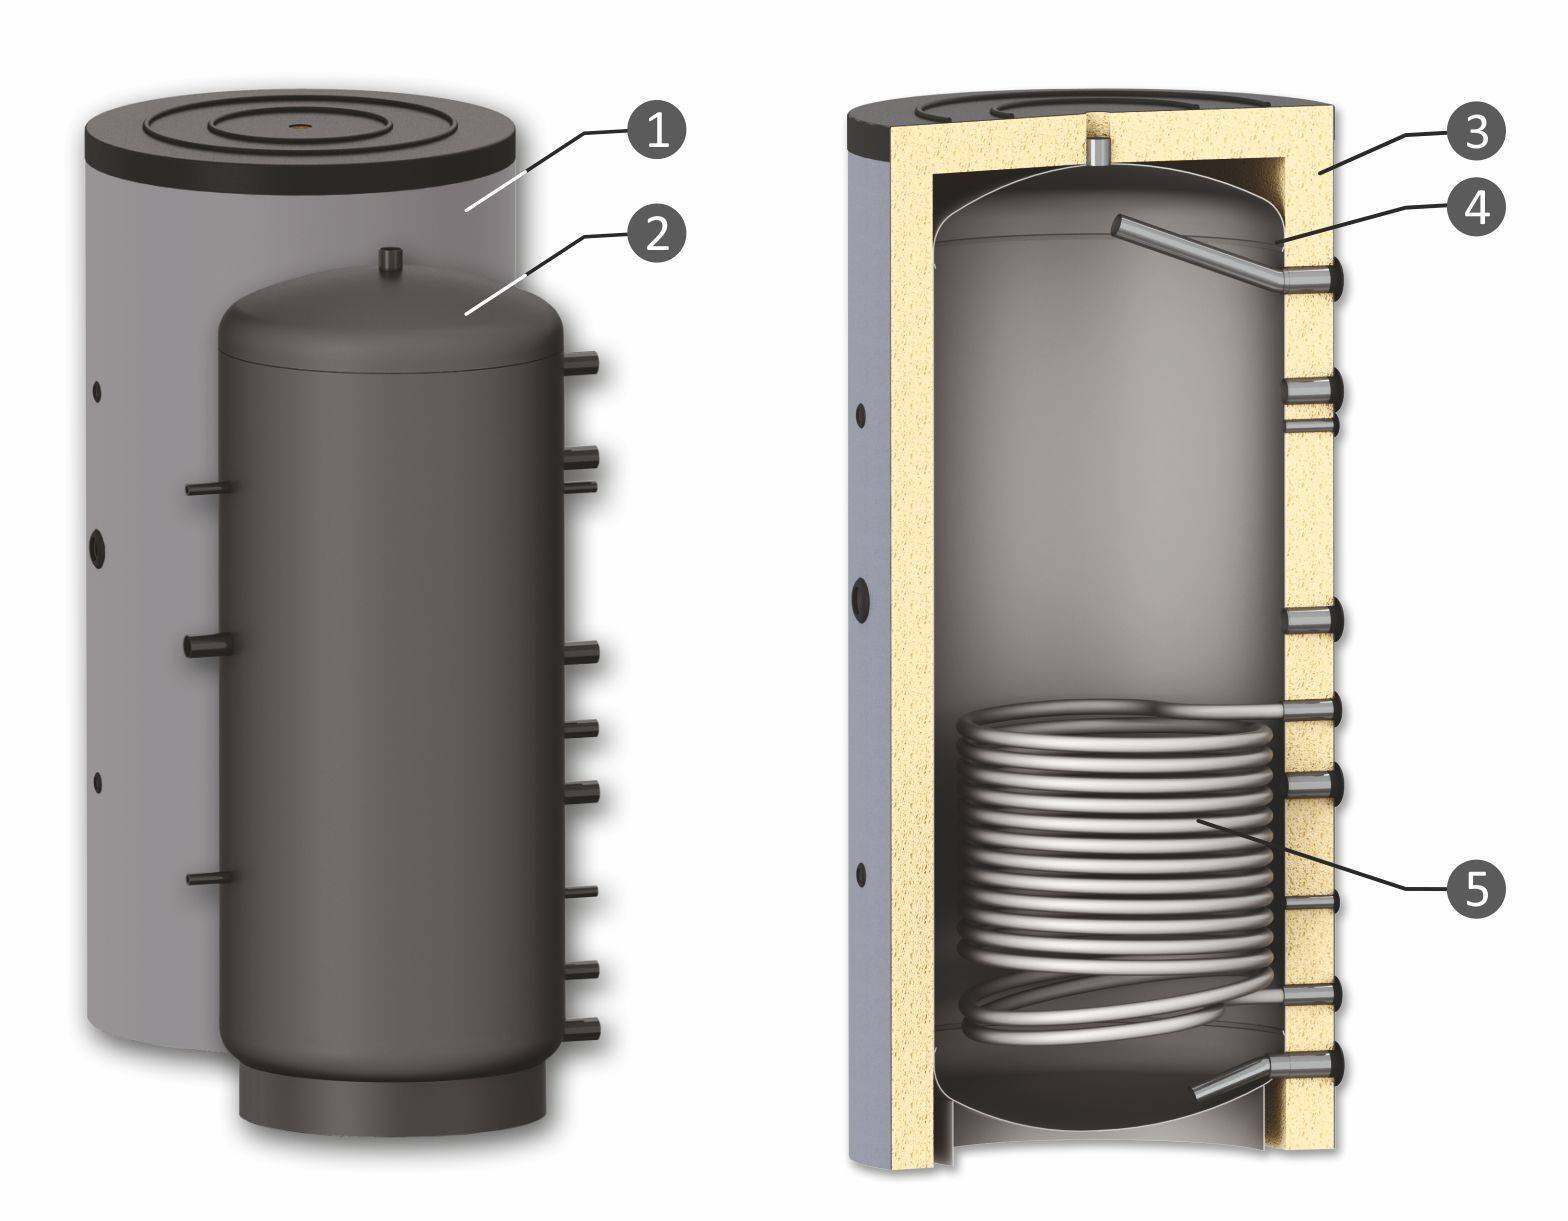 Теплоаккумулятор для системы отопления: принцип работы и подключение своими руками